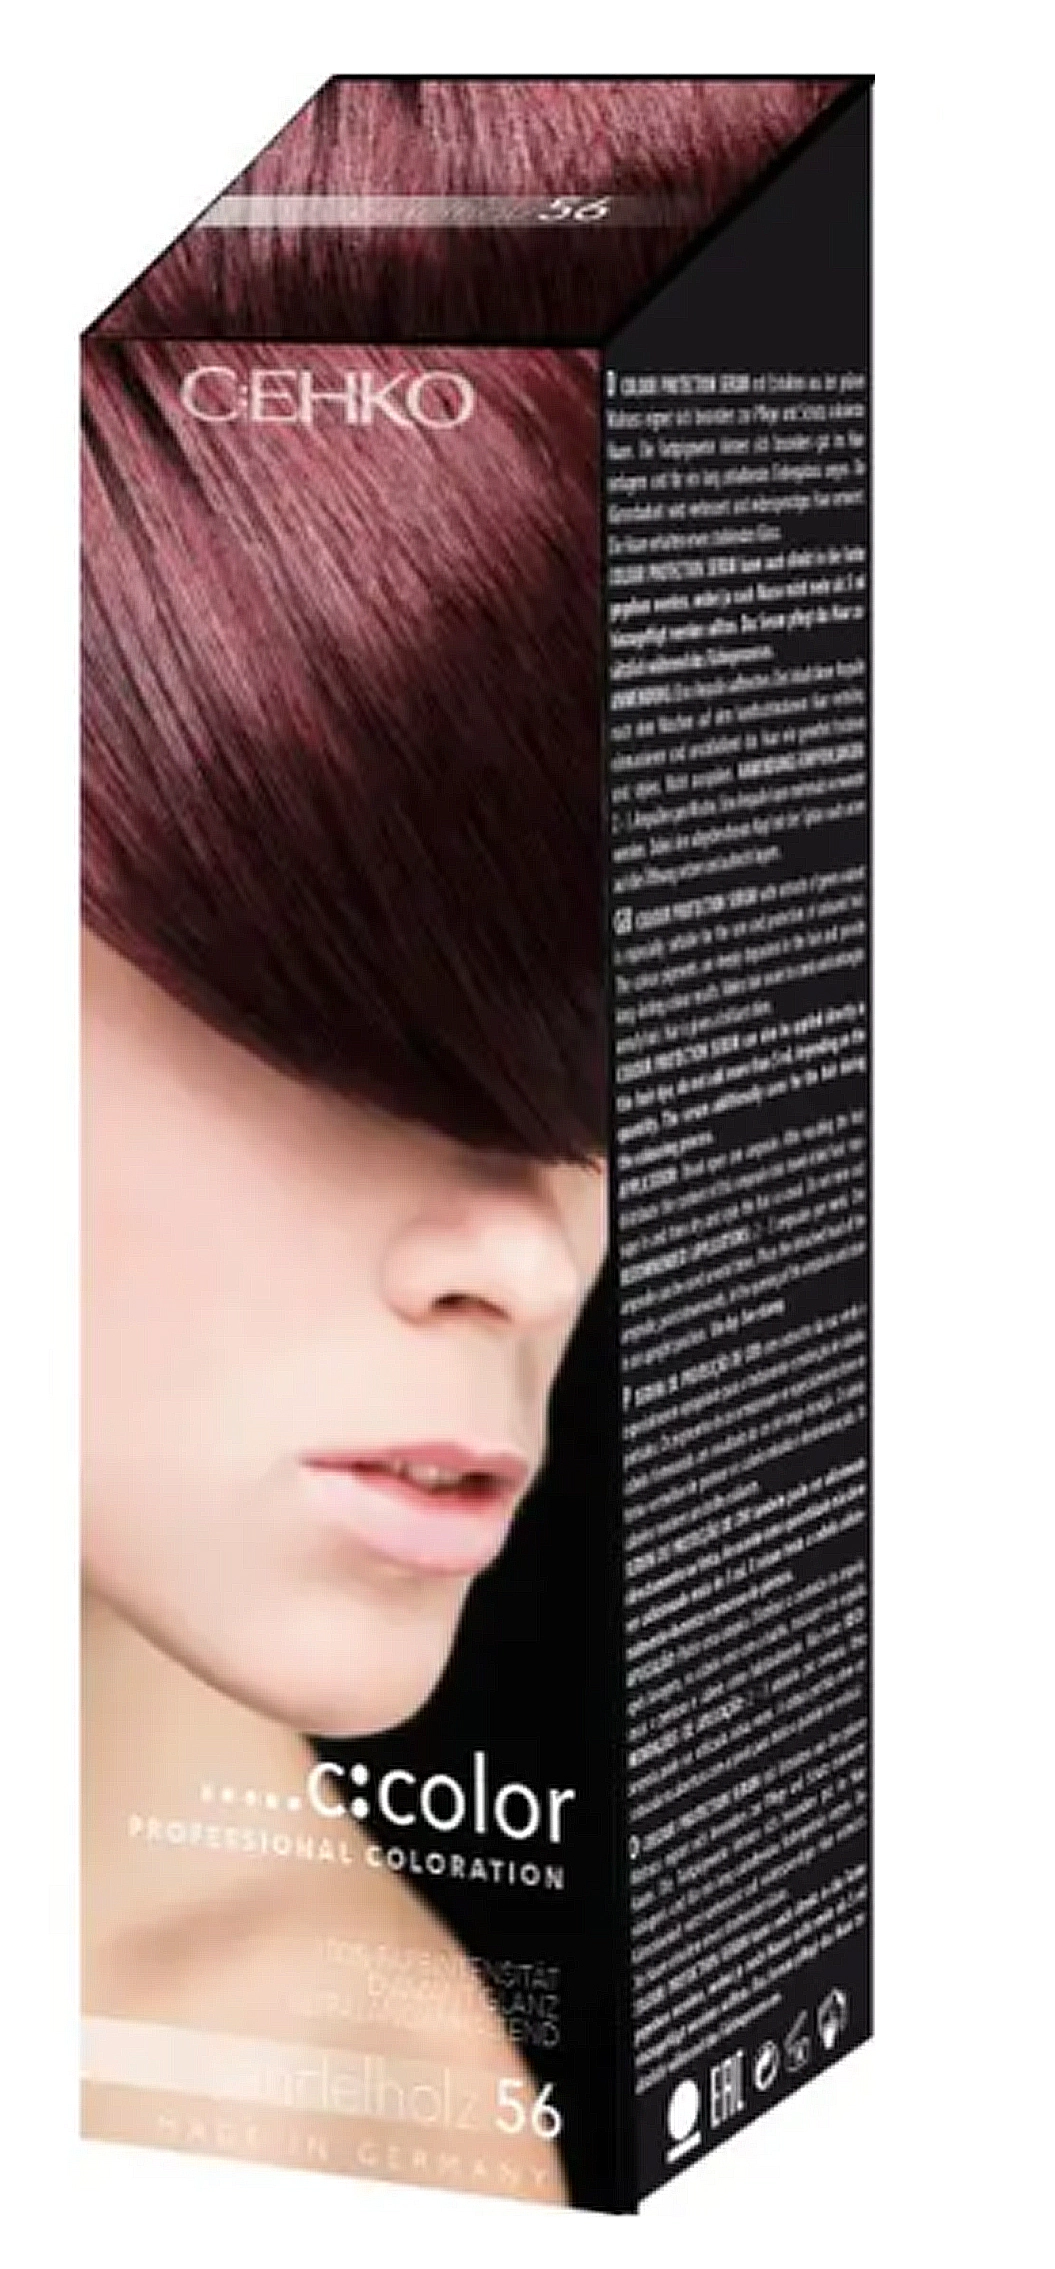 Стойкая крем-краска для волос - C:EHKO COLOR, 56 - Сандал - фото N1